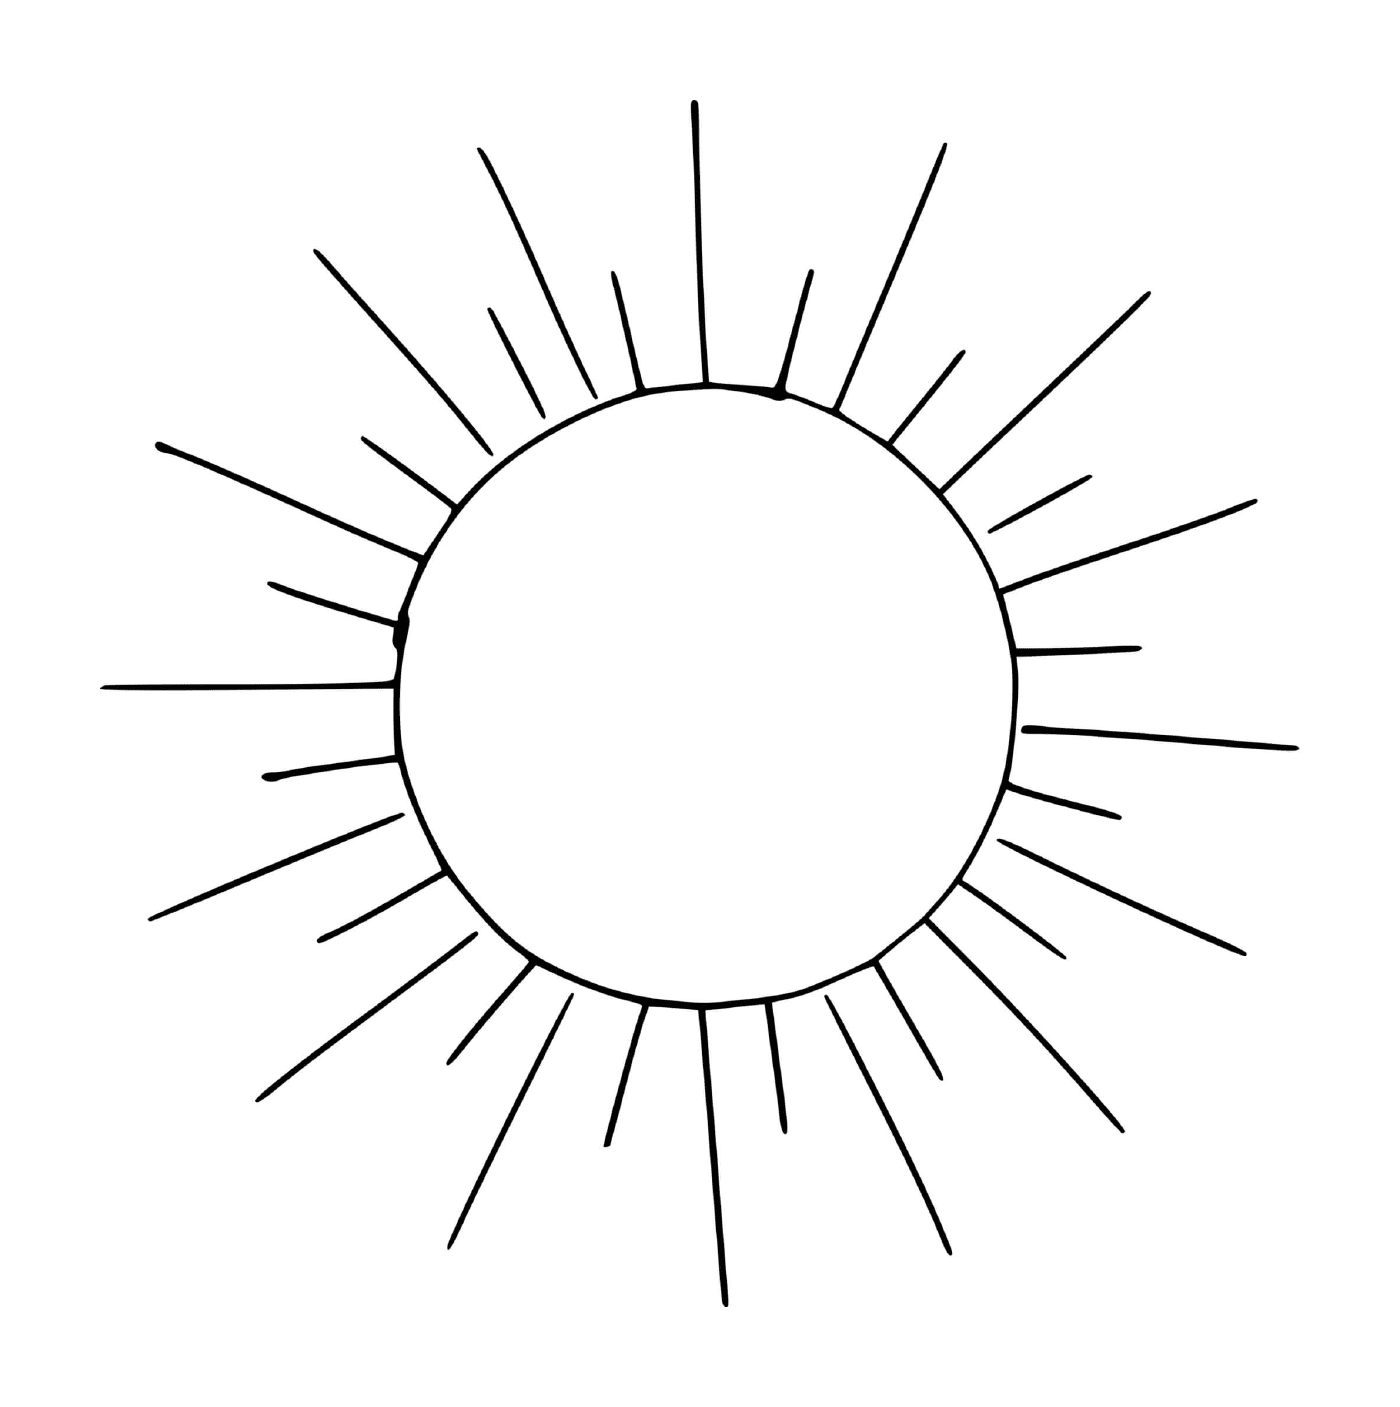  Солнце рядом с землей 